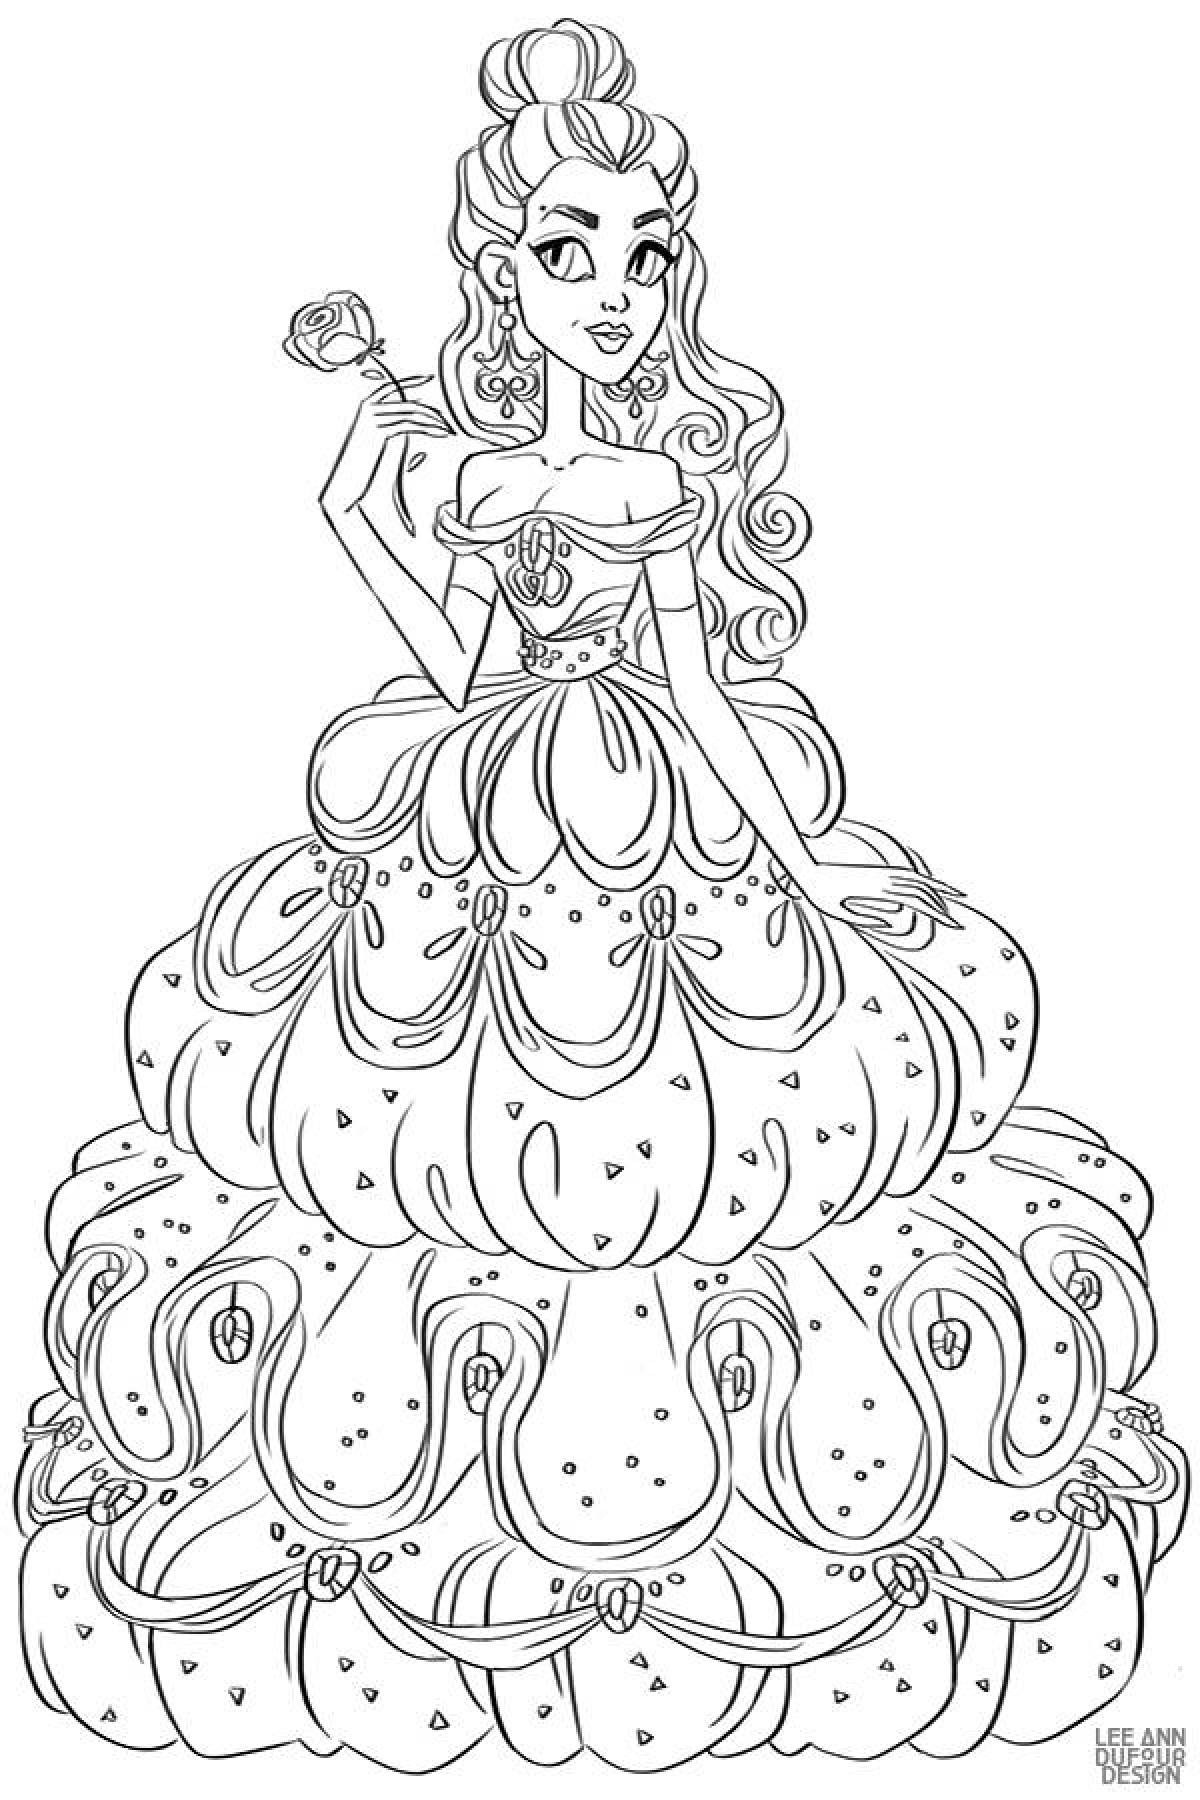 Riotous coloring of disney princesses in beautiful dresses